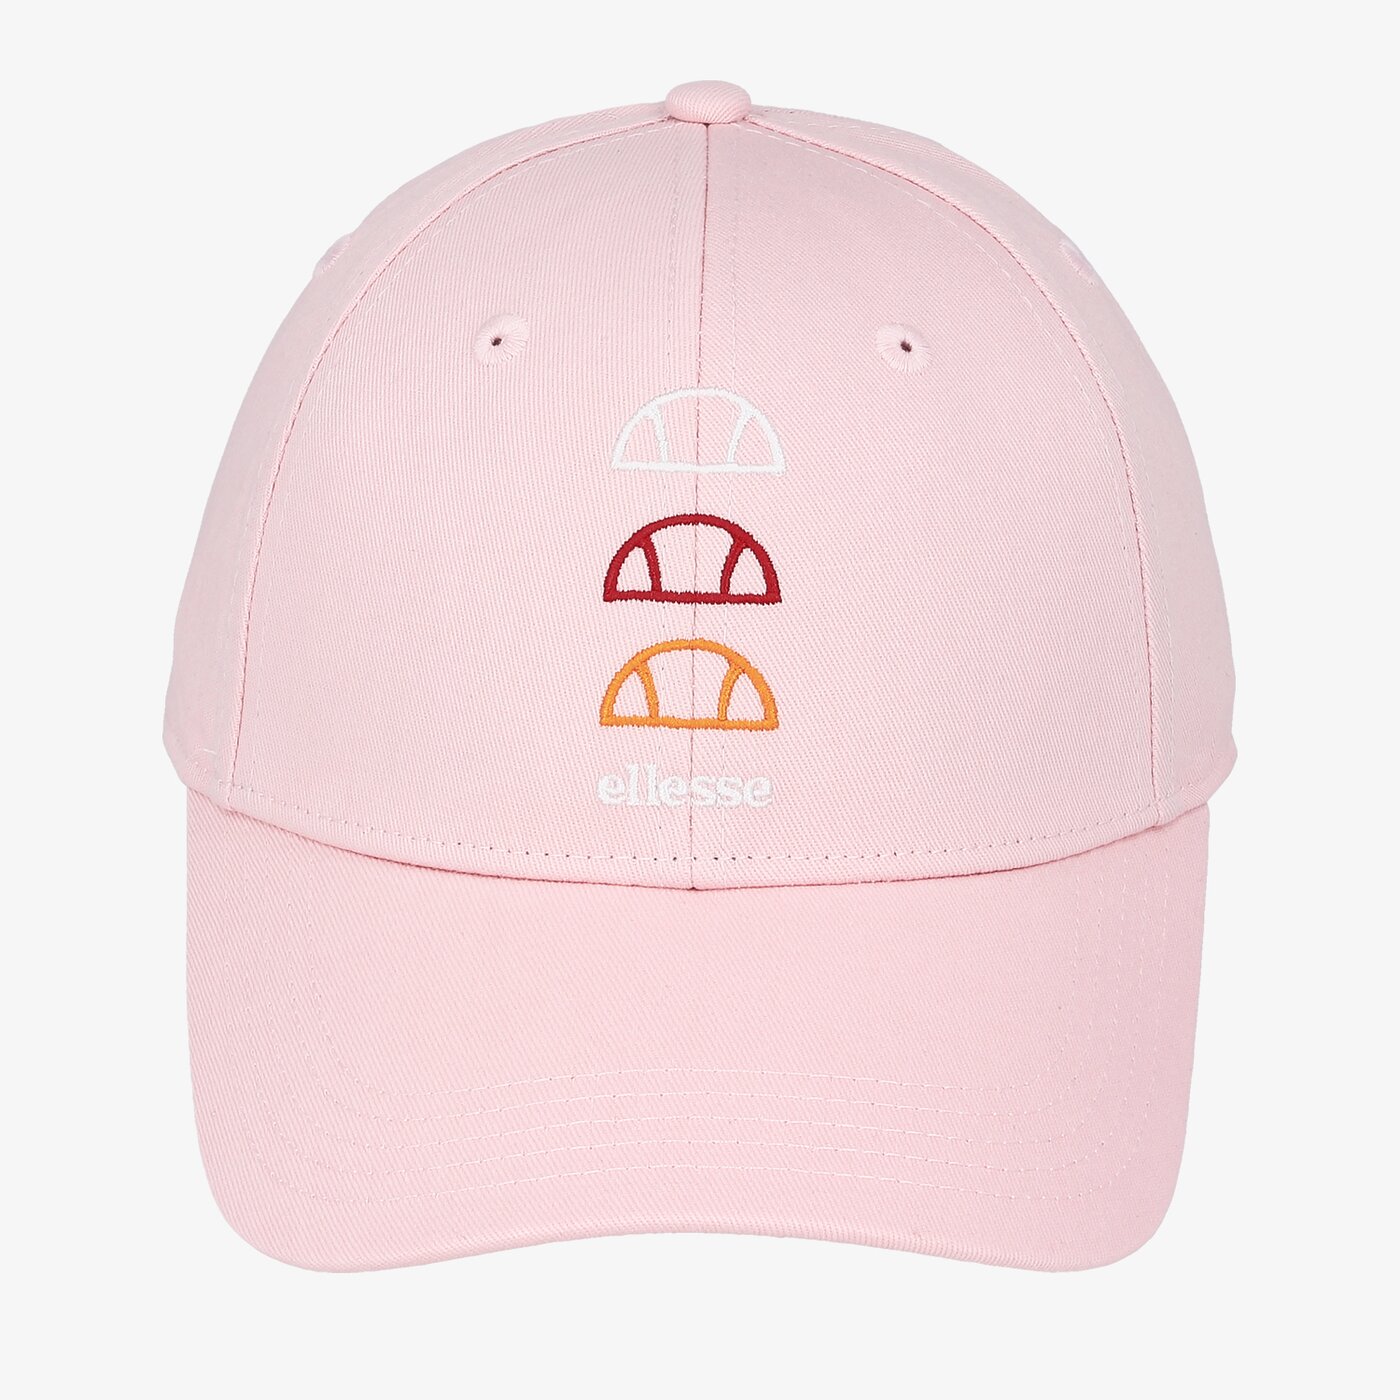 Sieviešu cepure ar nagu ELLESSE CEPURE DAZARO saga1590lightpink krāsa rozā